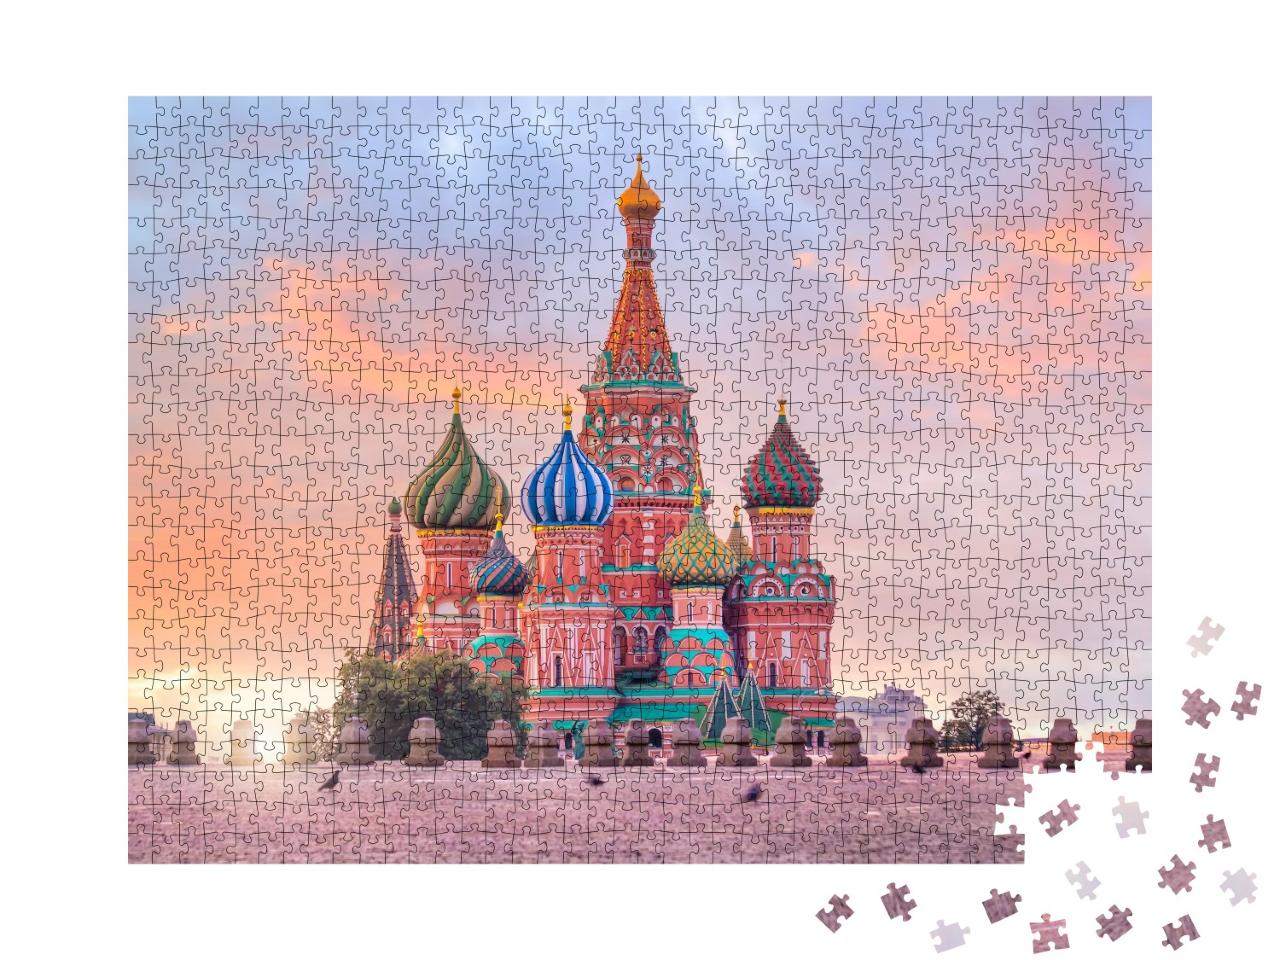 Puzzle de 1000 pièces « La cathédrale Saint-Basile au lever du soleil, Moscou »